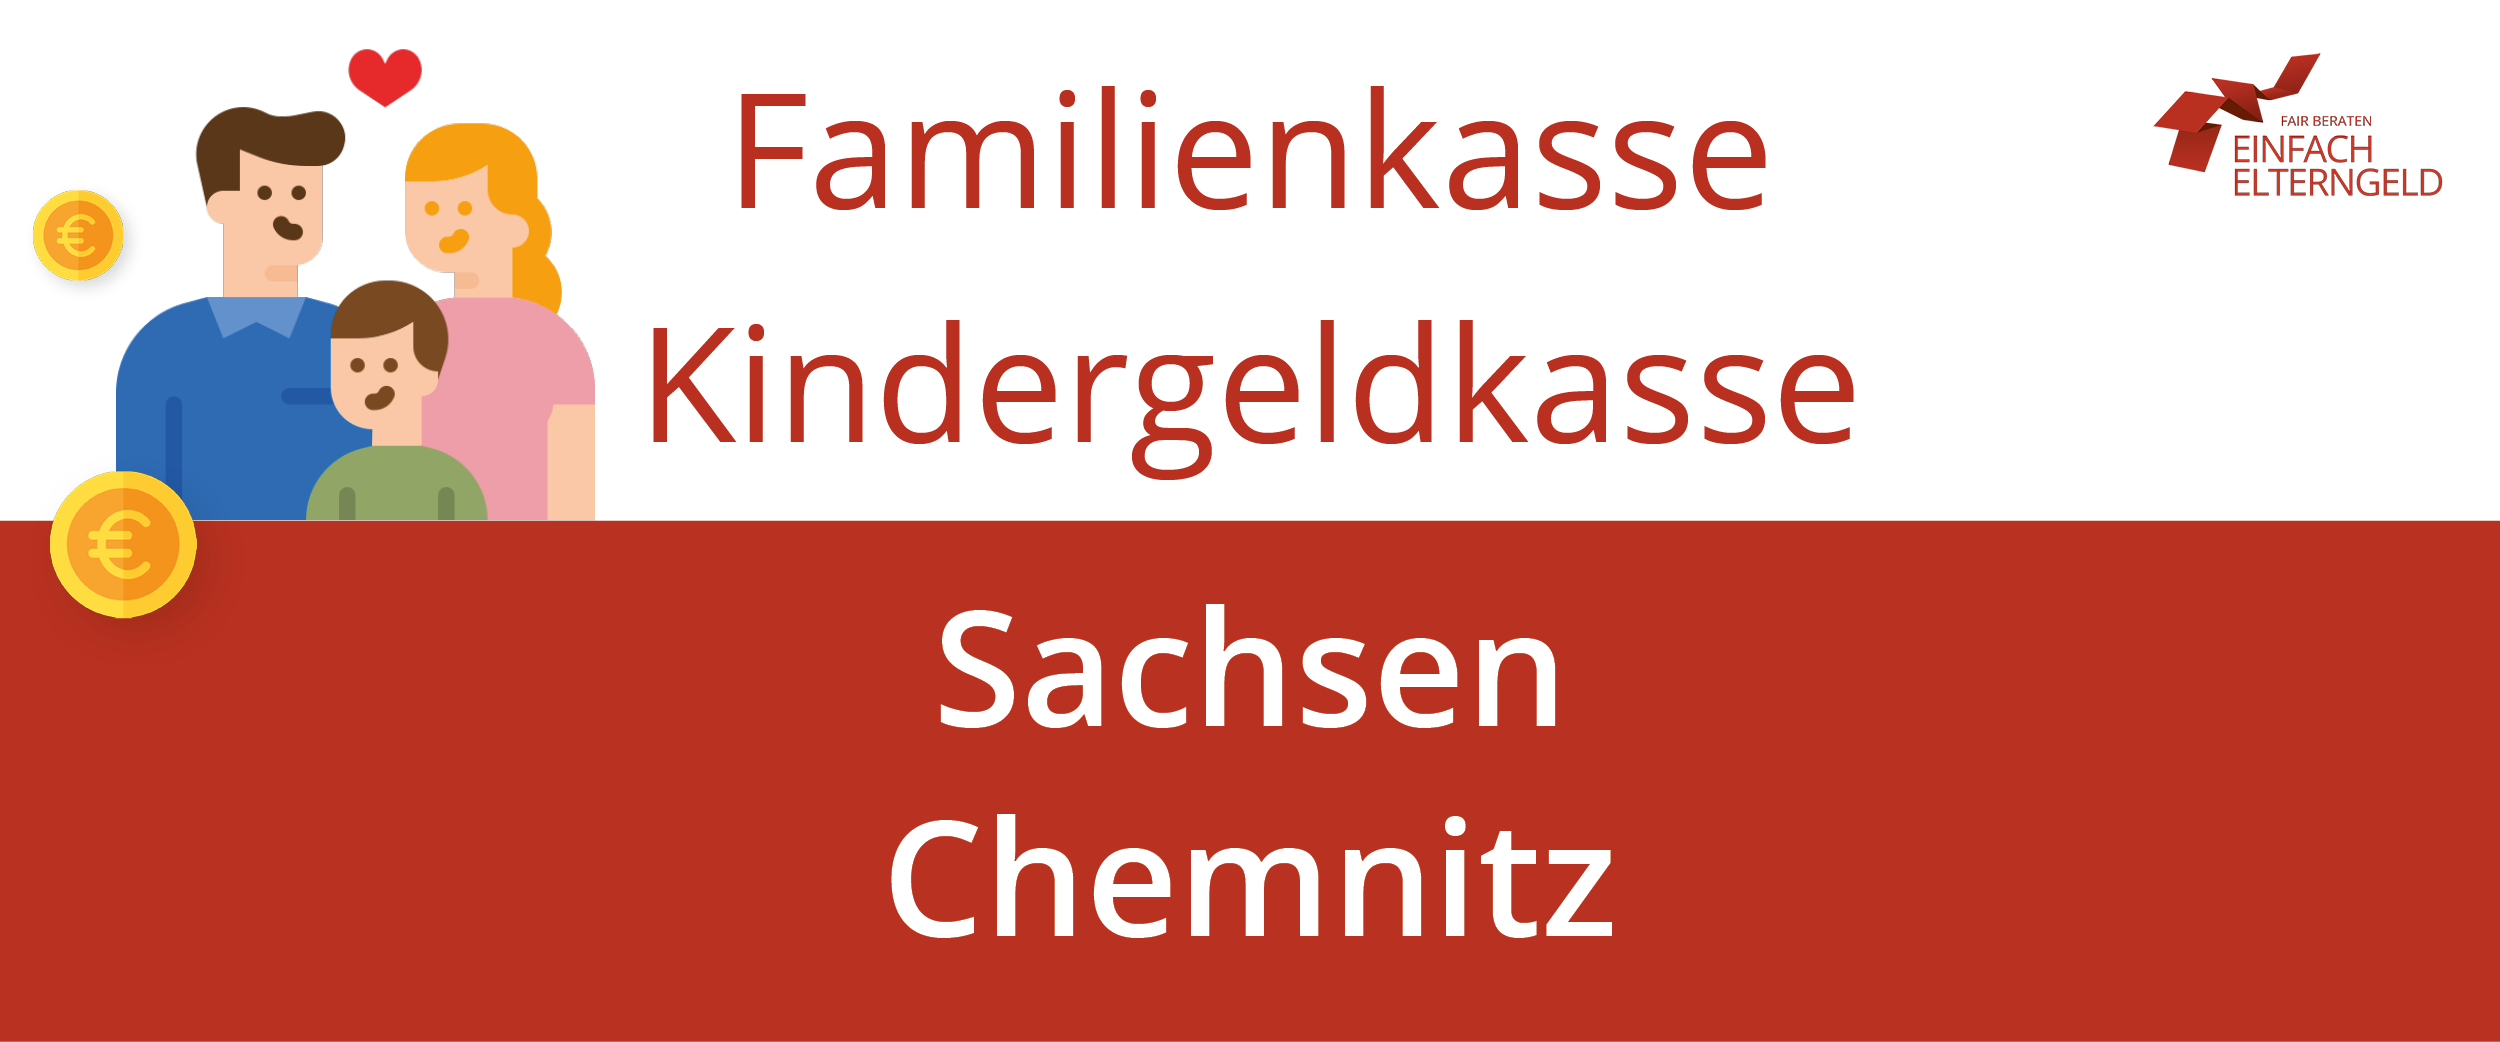 Familienkasse Kindergeldkasse Sachsen Chemnitz - So erreichen Sie Ihre Familienkasse.